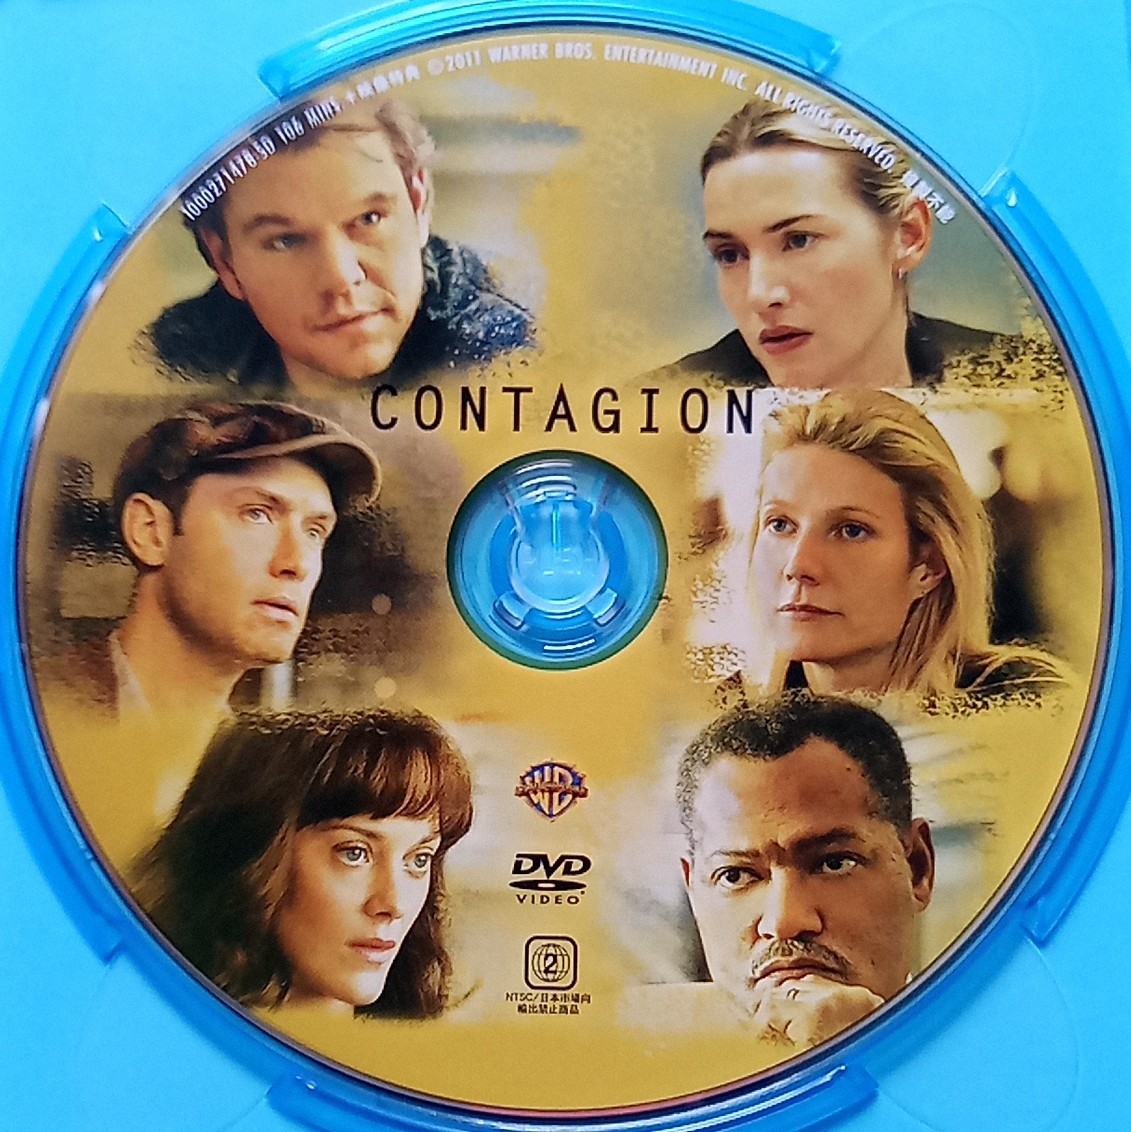 【送料込】 Blu-ray + DVD 2枚組 コンテイジョン / Contagion マット・デイモン マリオン・コティヤール ジュード・ロウ_画像4